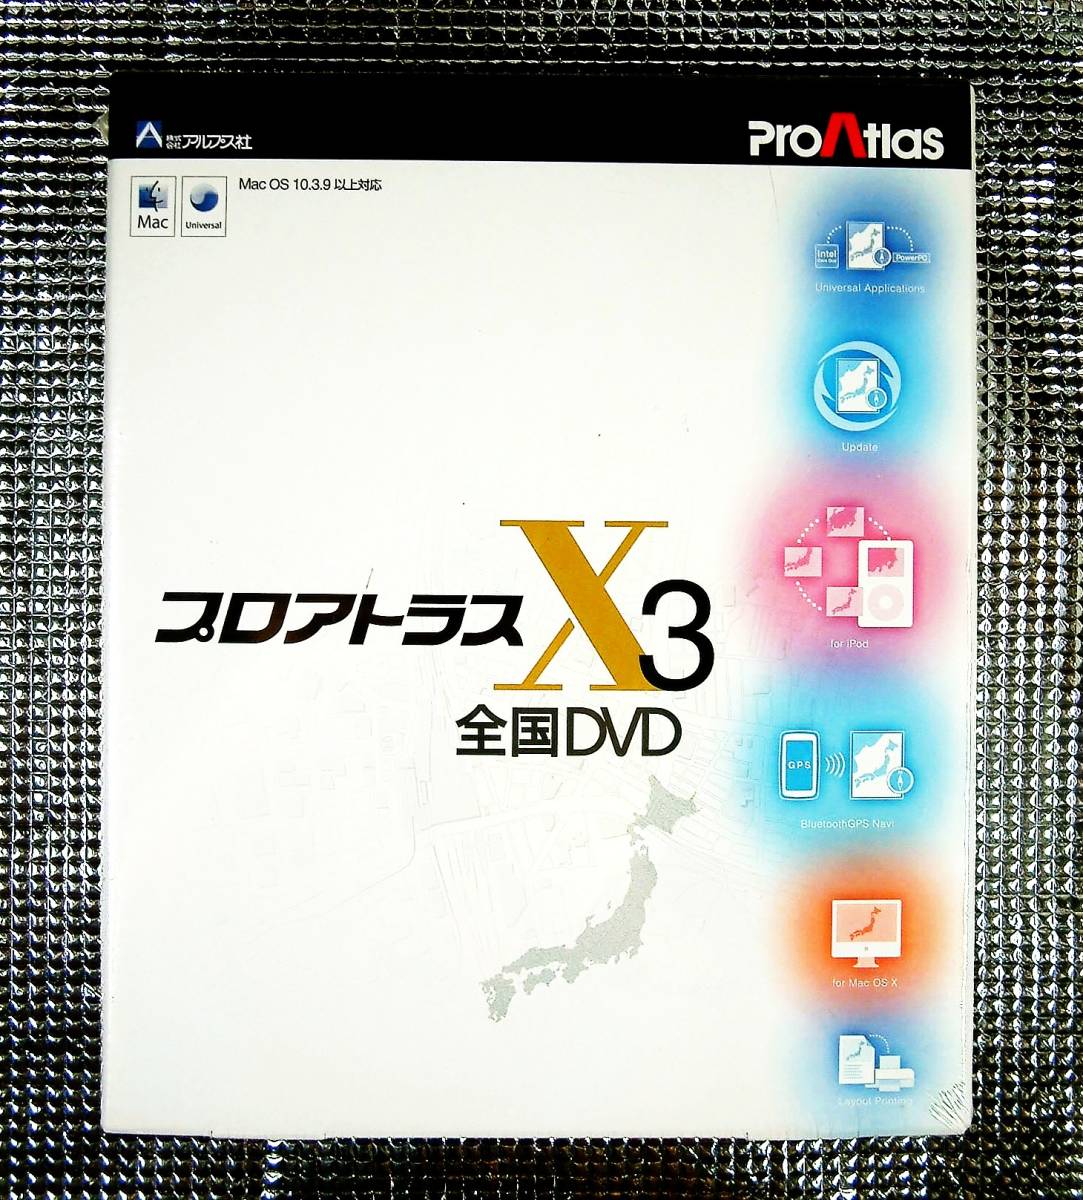 【4094】アルプス社 プロアトラス X3 全国DVD Macintosh用 未開封品 ProAtlas マップ 地図ソフト 対応(BluetoothGPS,NMEA0183規格,PowerPC)